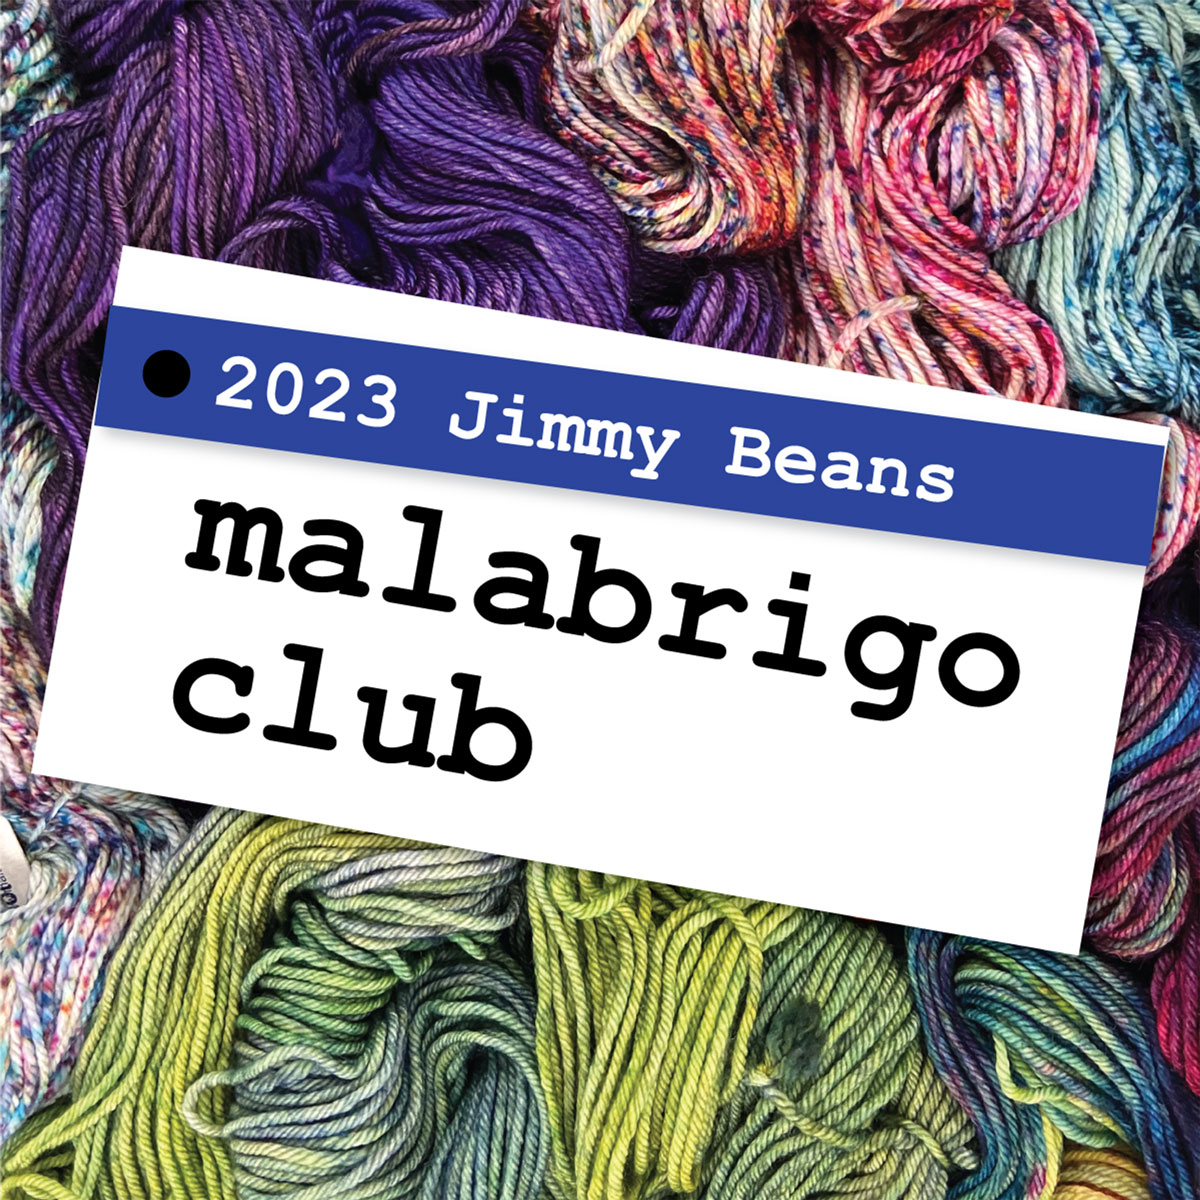 Malabrigo Chunky Yarn - 041 Burgundy at Jimmy Beans Wool